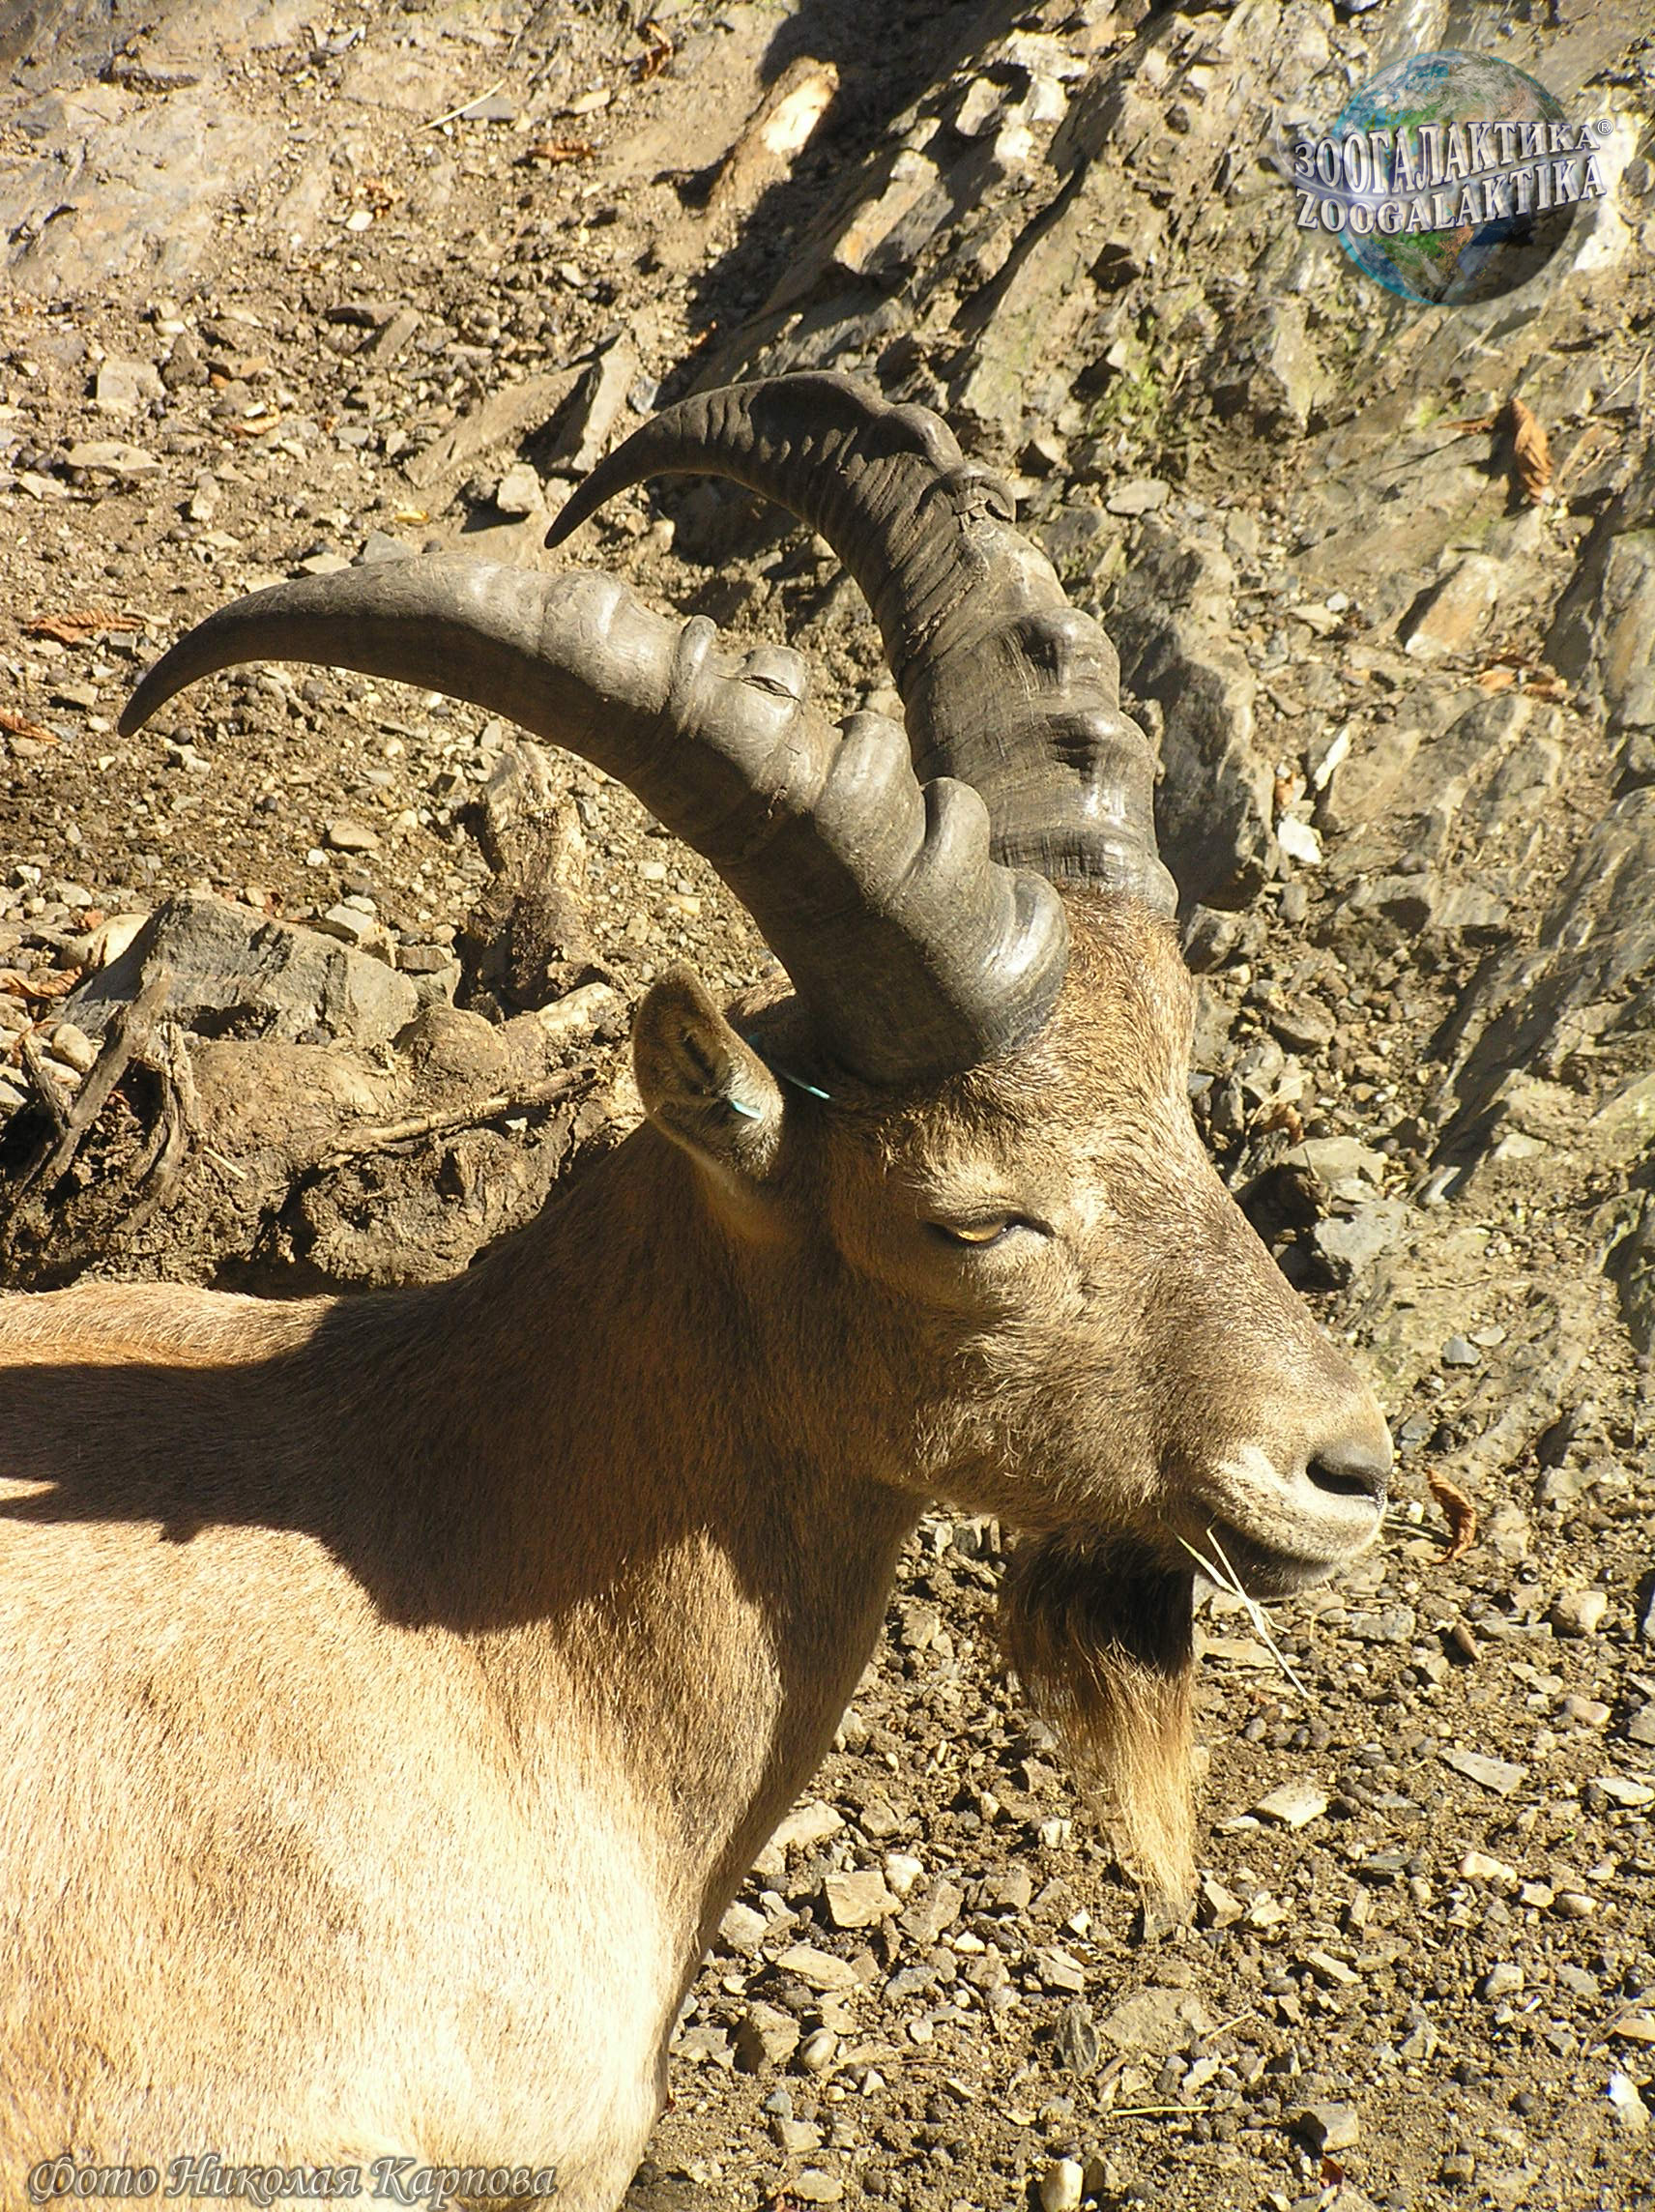 Западнокавказский тур - Горные козлы | Некоммерческий учебно-познавательный  интернет-портал Зоогалактика